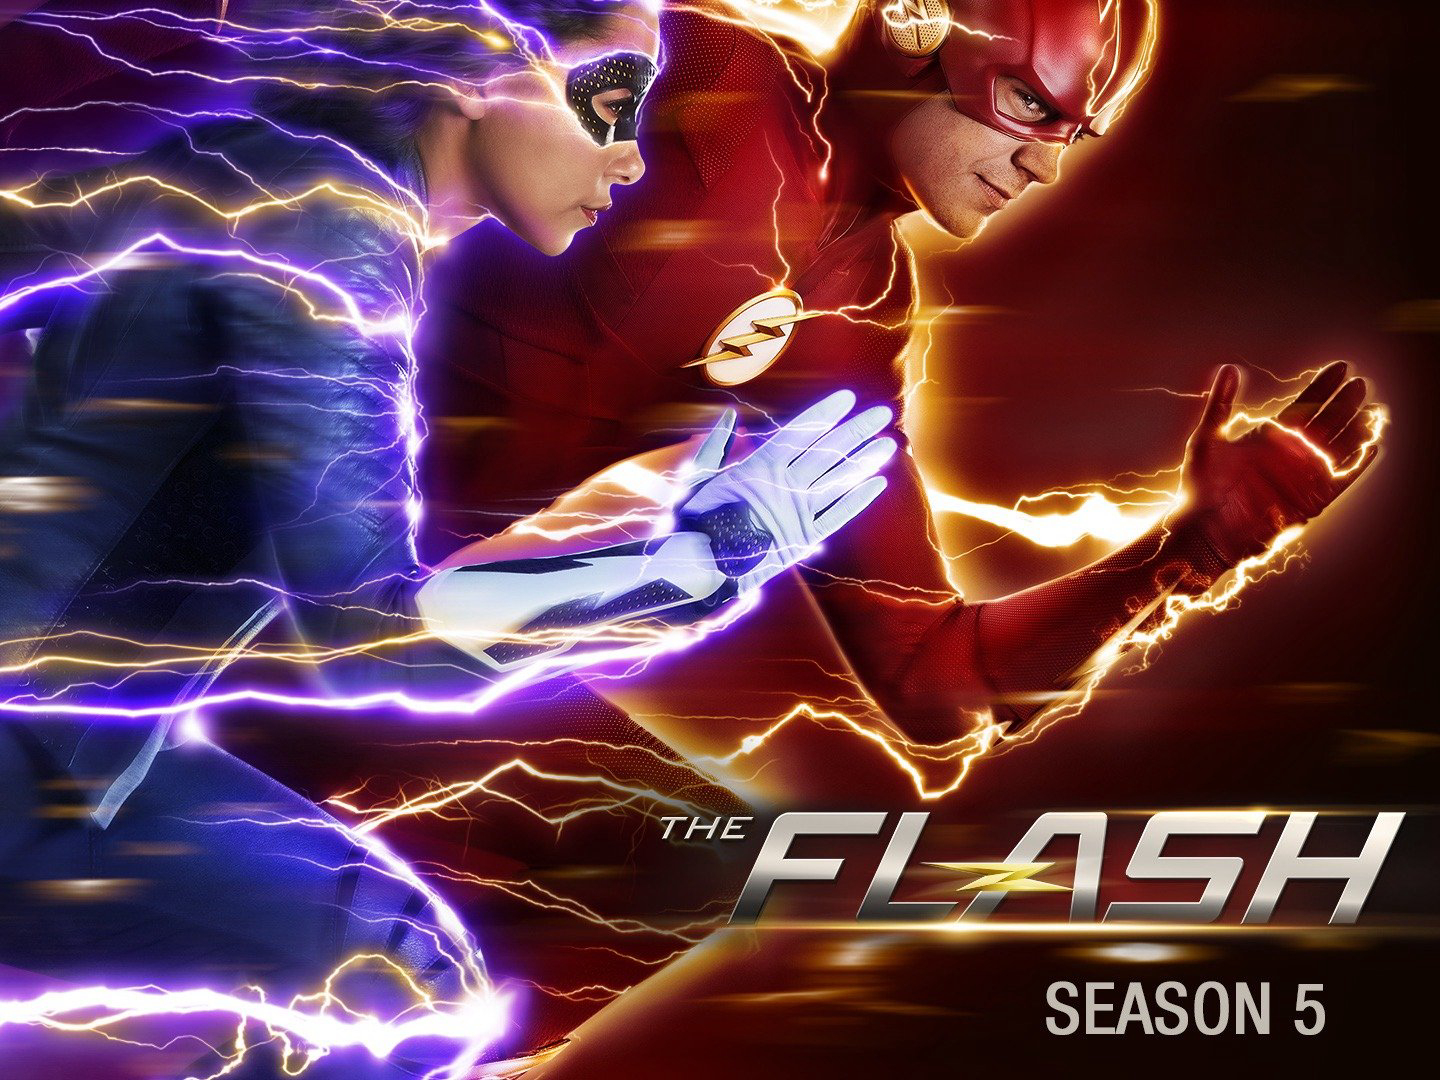 Người hùng tia chớp (Phần 5) - The Flash (Season 5)